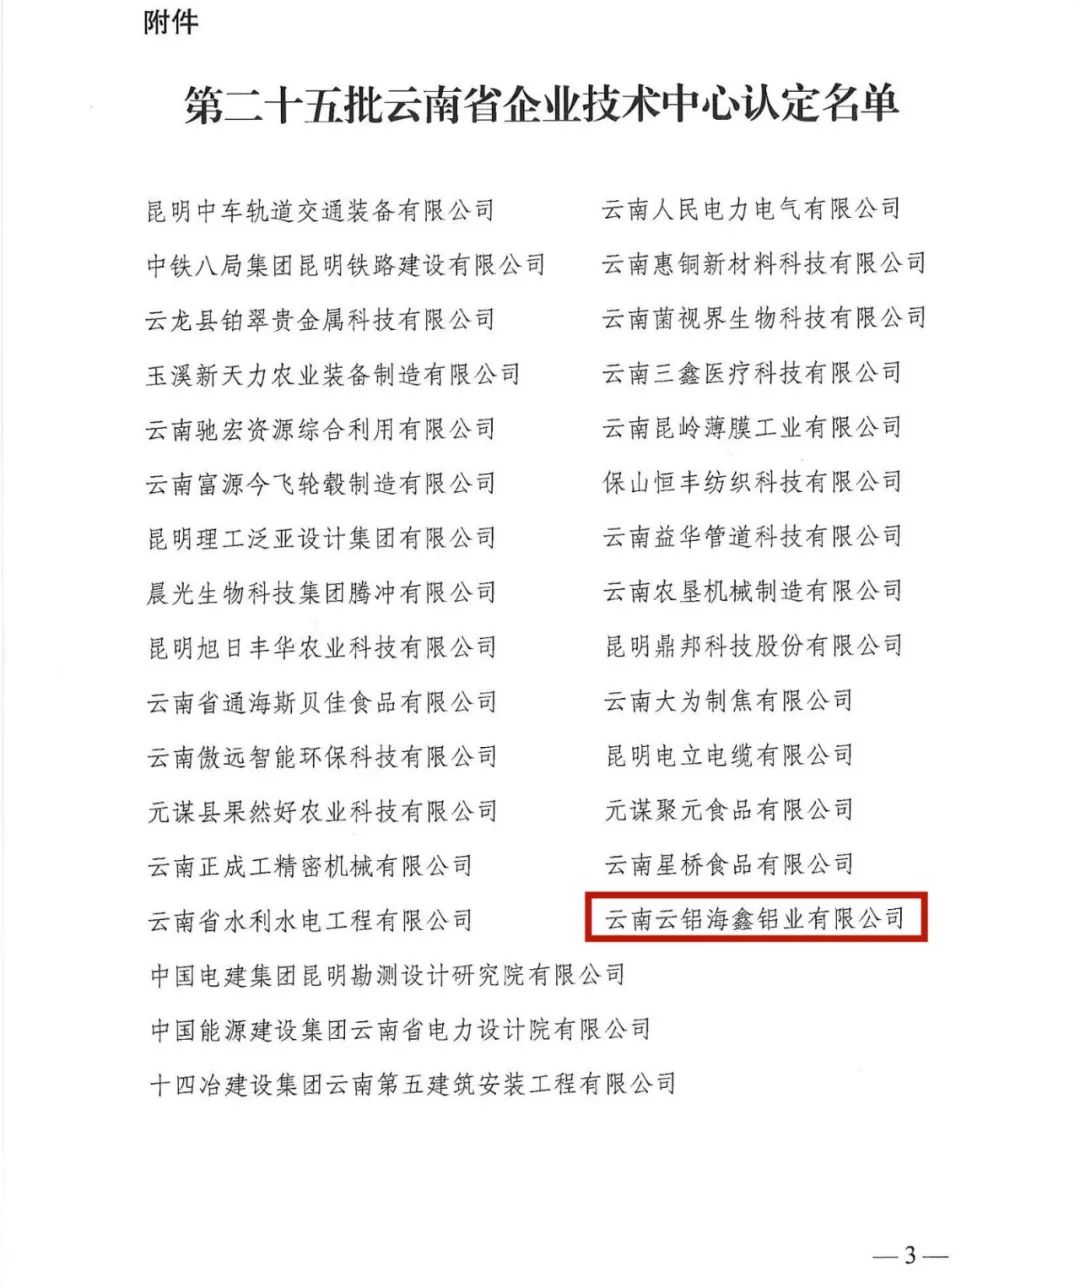 云铝海鑫顺利通过云南省企业技术中心认证